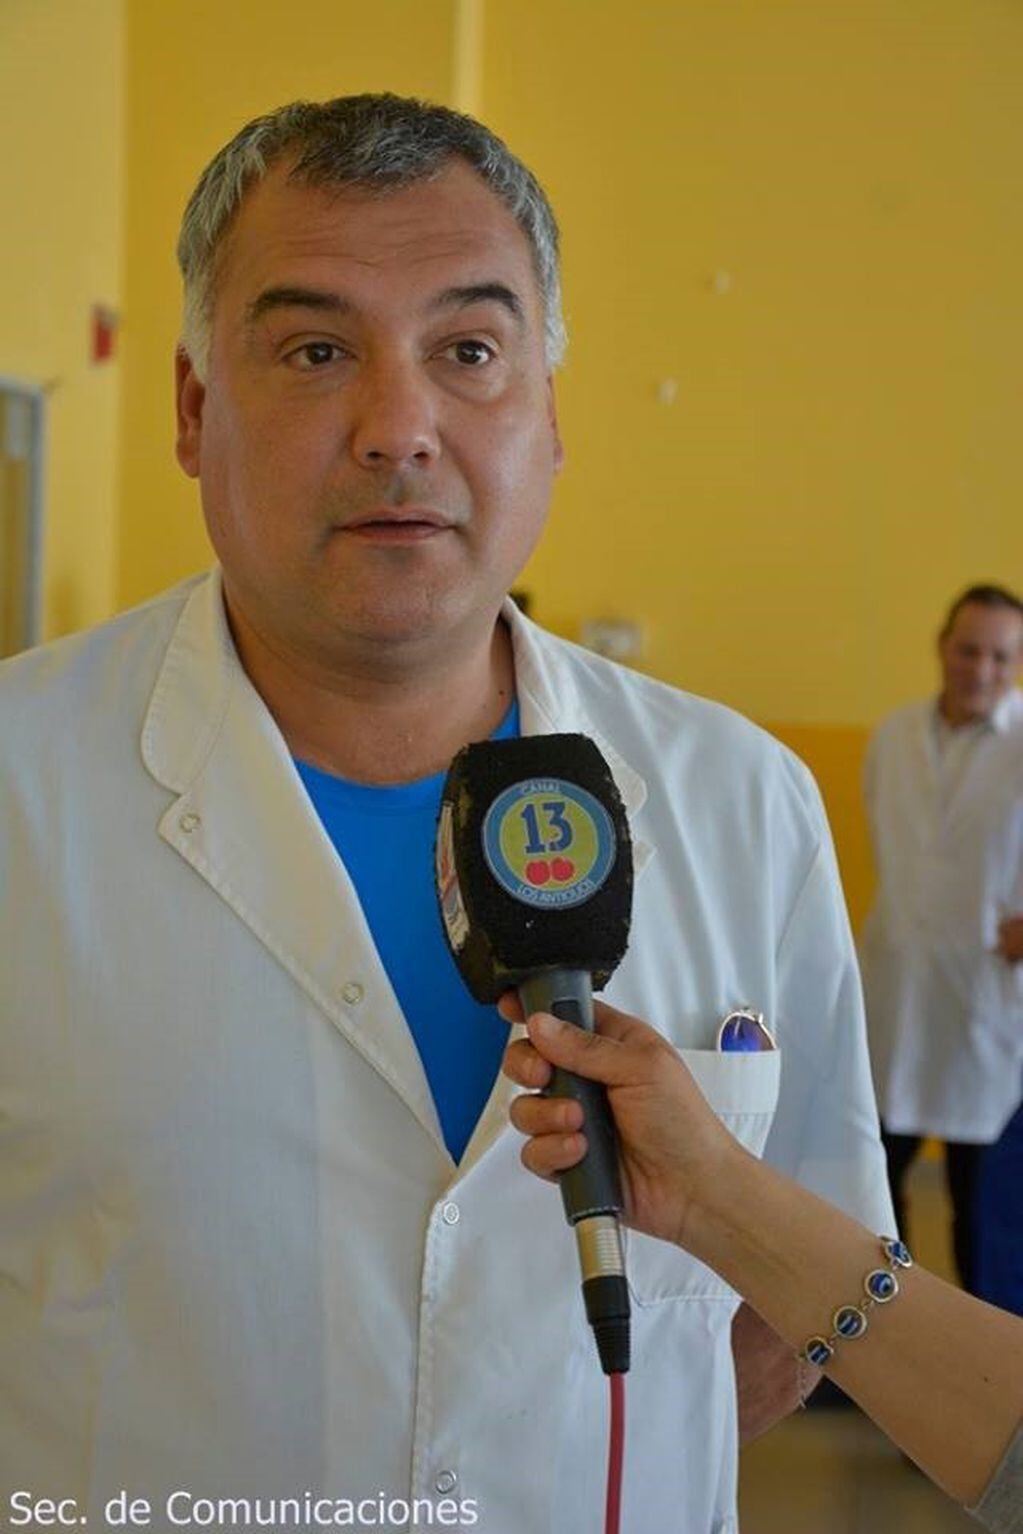 Dr. Sergio Benitez